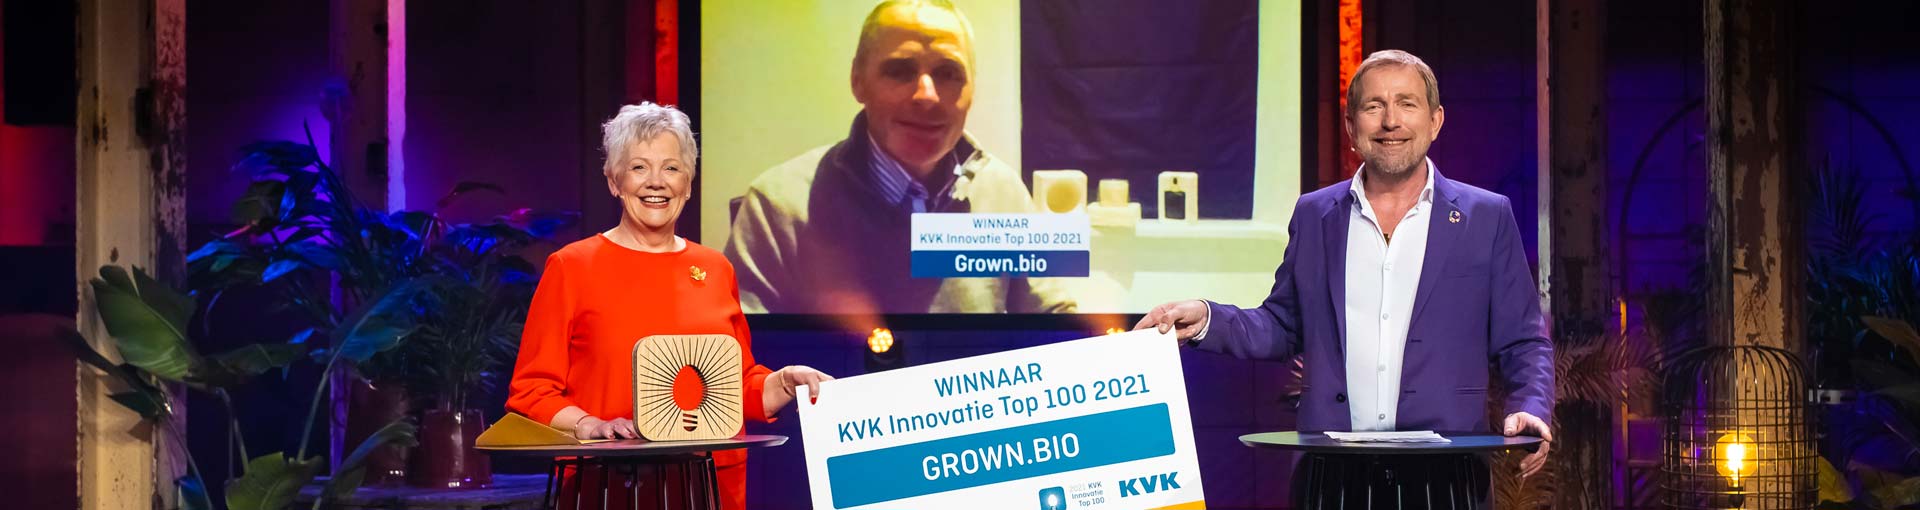 15 juni: Feestelijke bijeenkomst Gelderse genomineerden KVK Innovatie Top 100